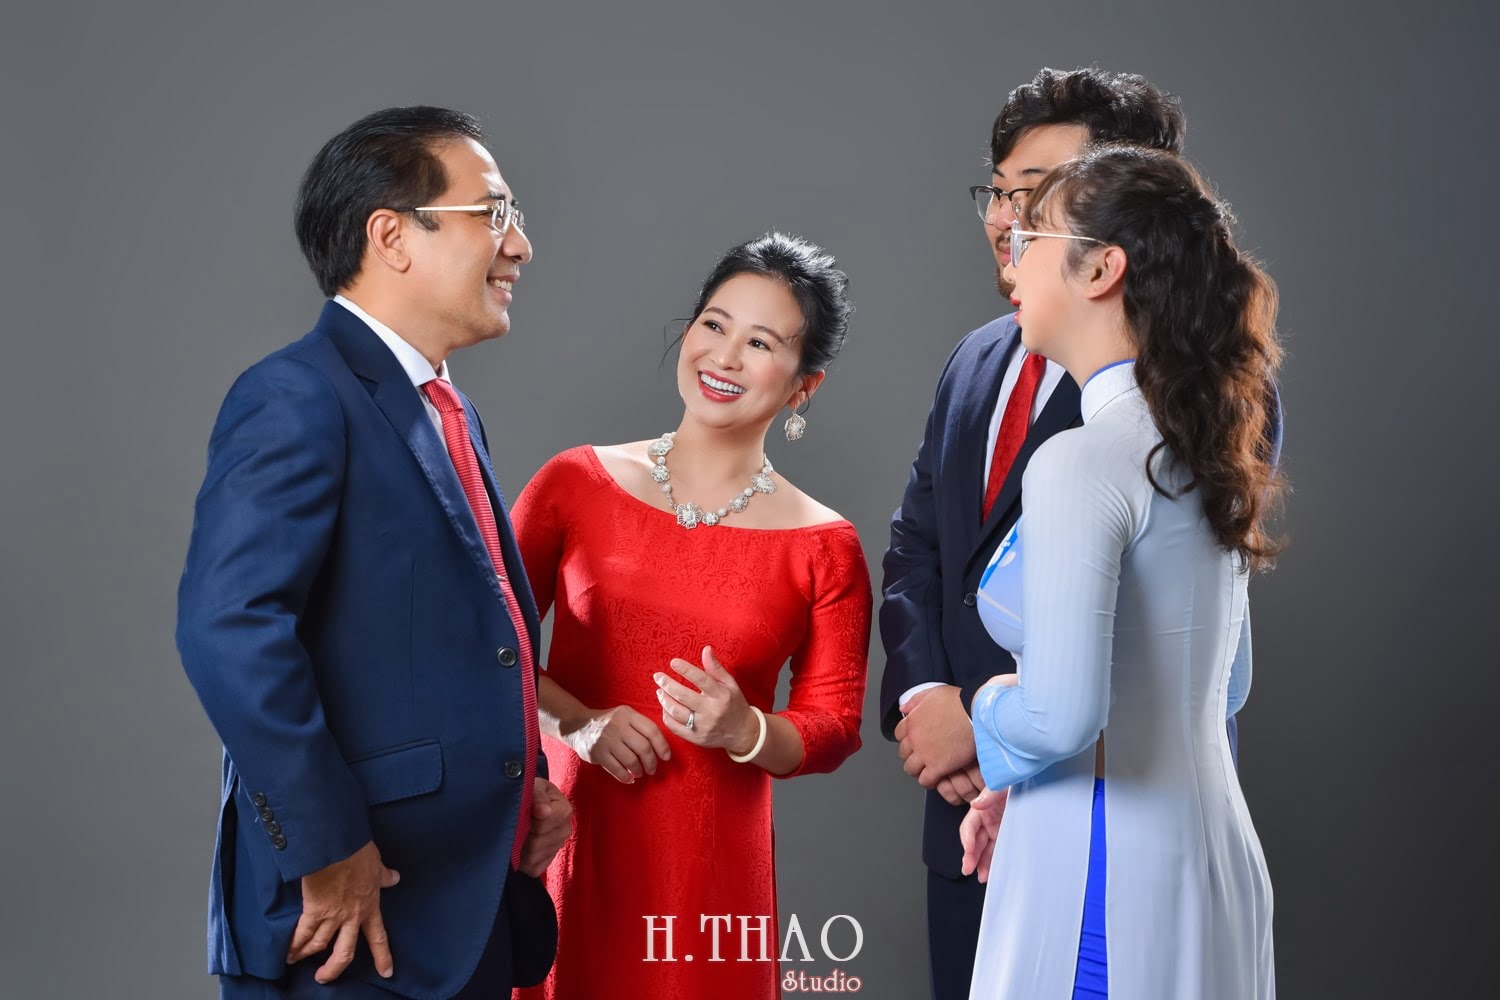 Anh gia dinh 4 nguoi 10 min - Studio chụp ảnh gia đình tự nhiên nhất tại Tp.HCM – HThao Studio